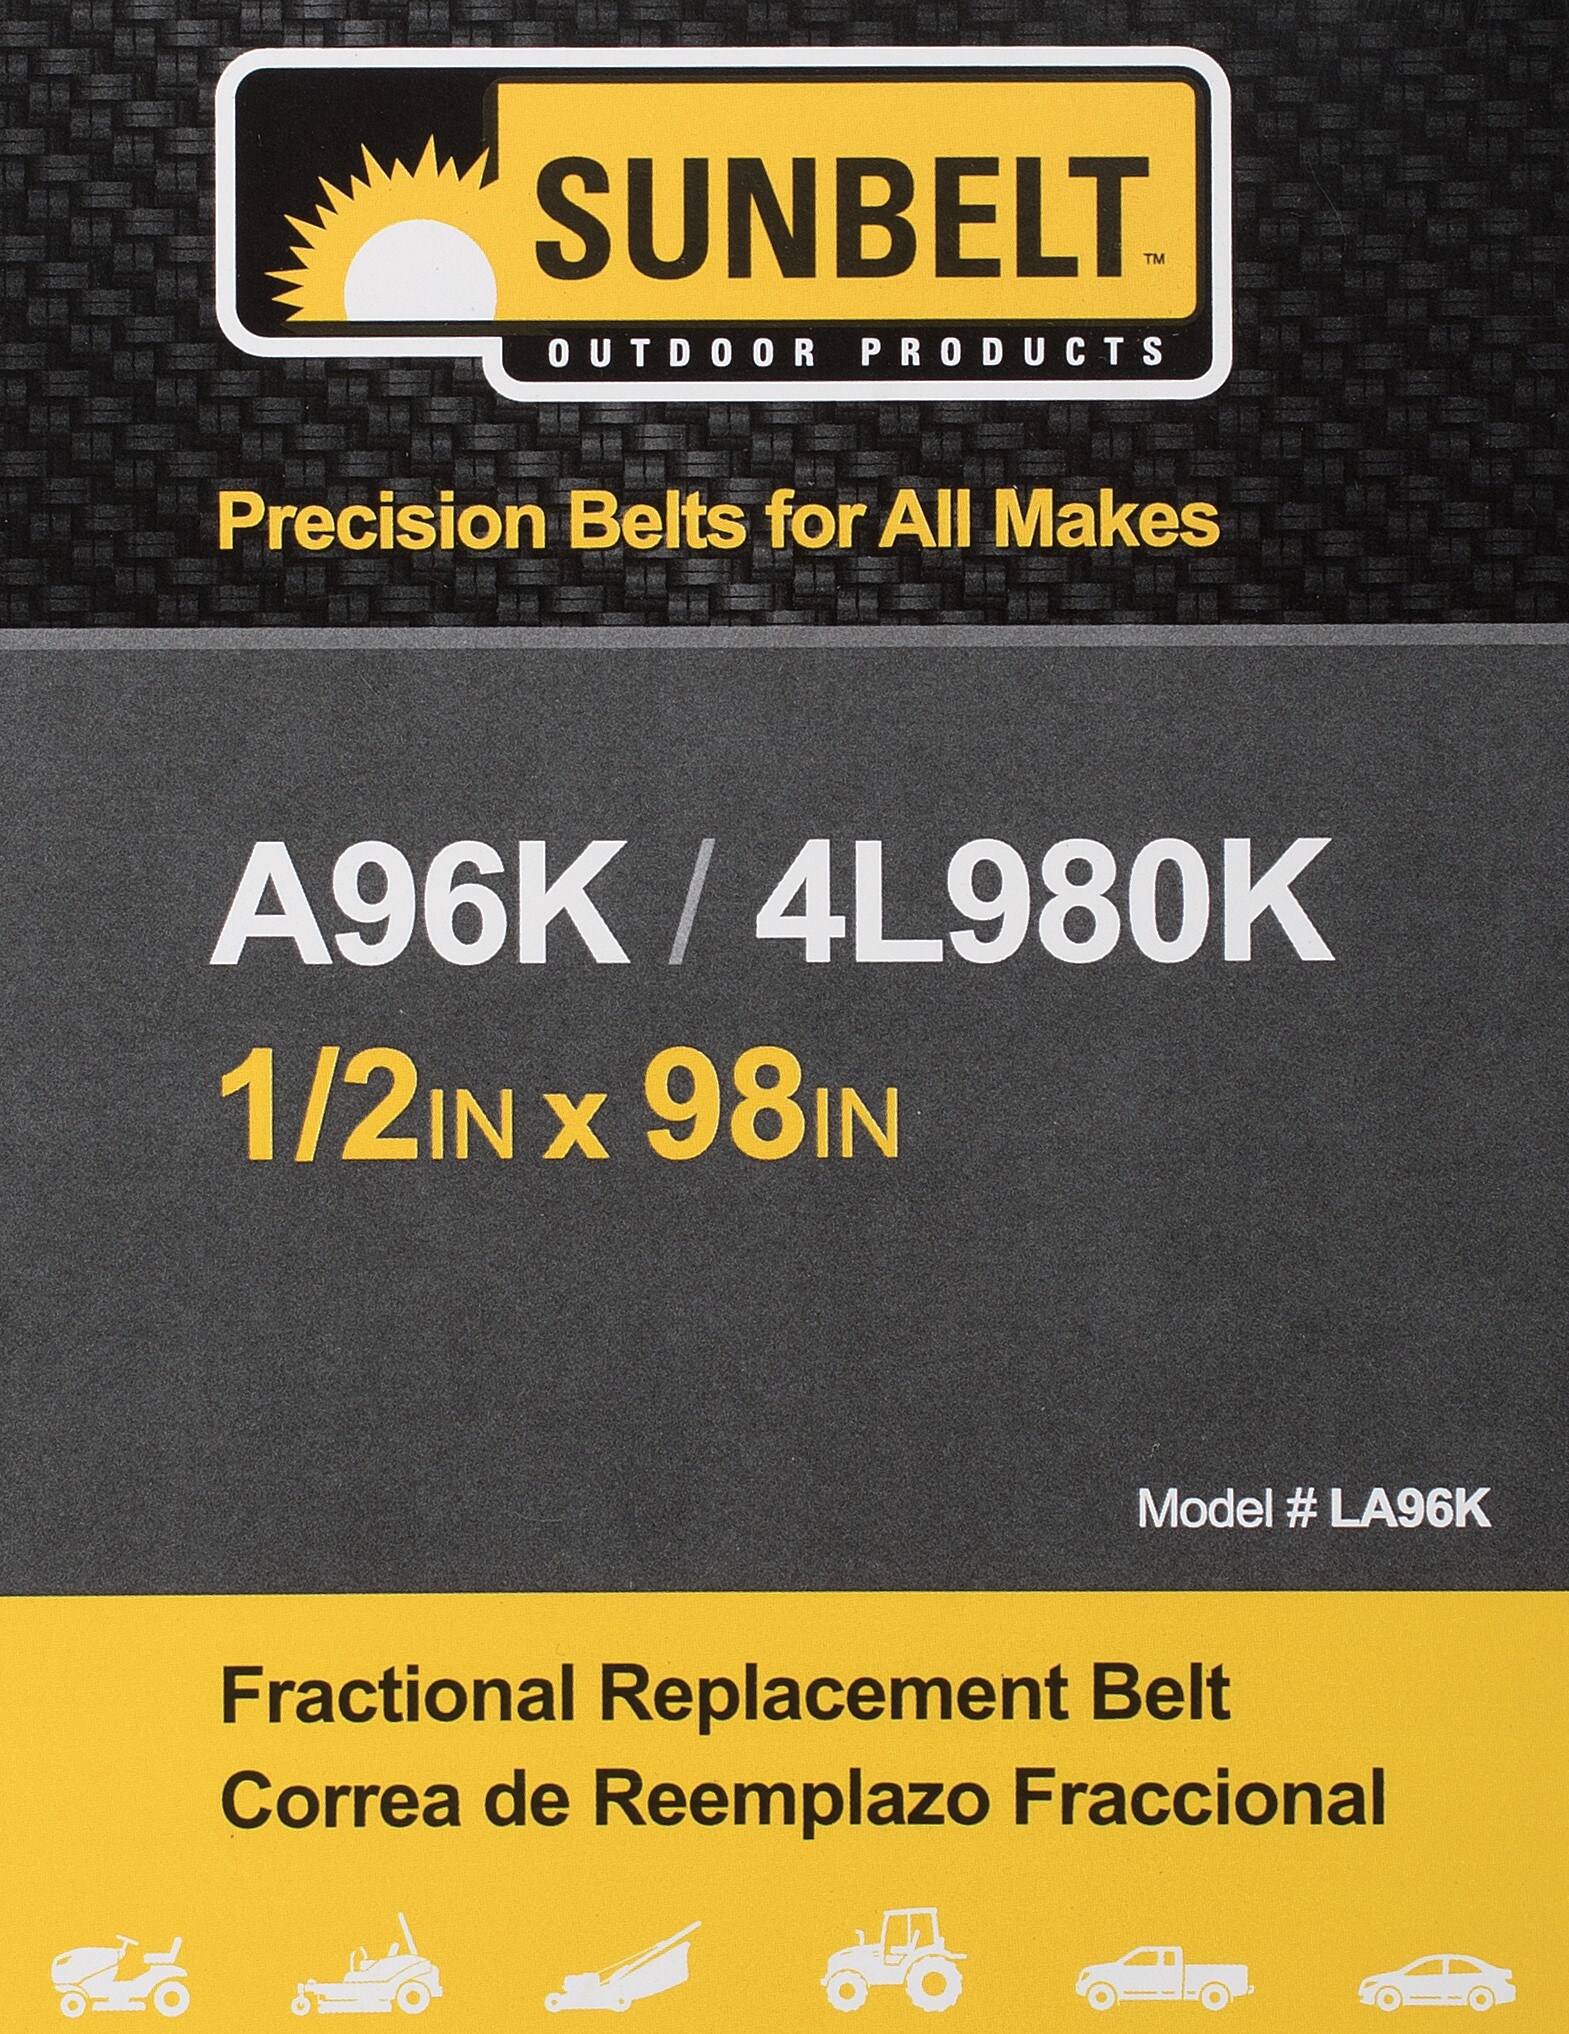 1 Aramid D&D PowerDrive B1G6929 SUNBELT Outdoor Products Kevlar Replacement Belt